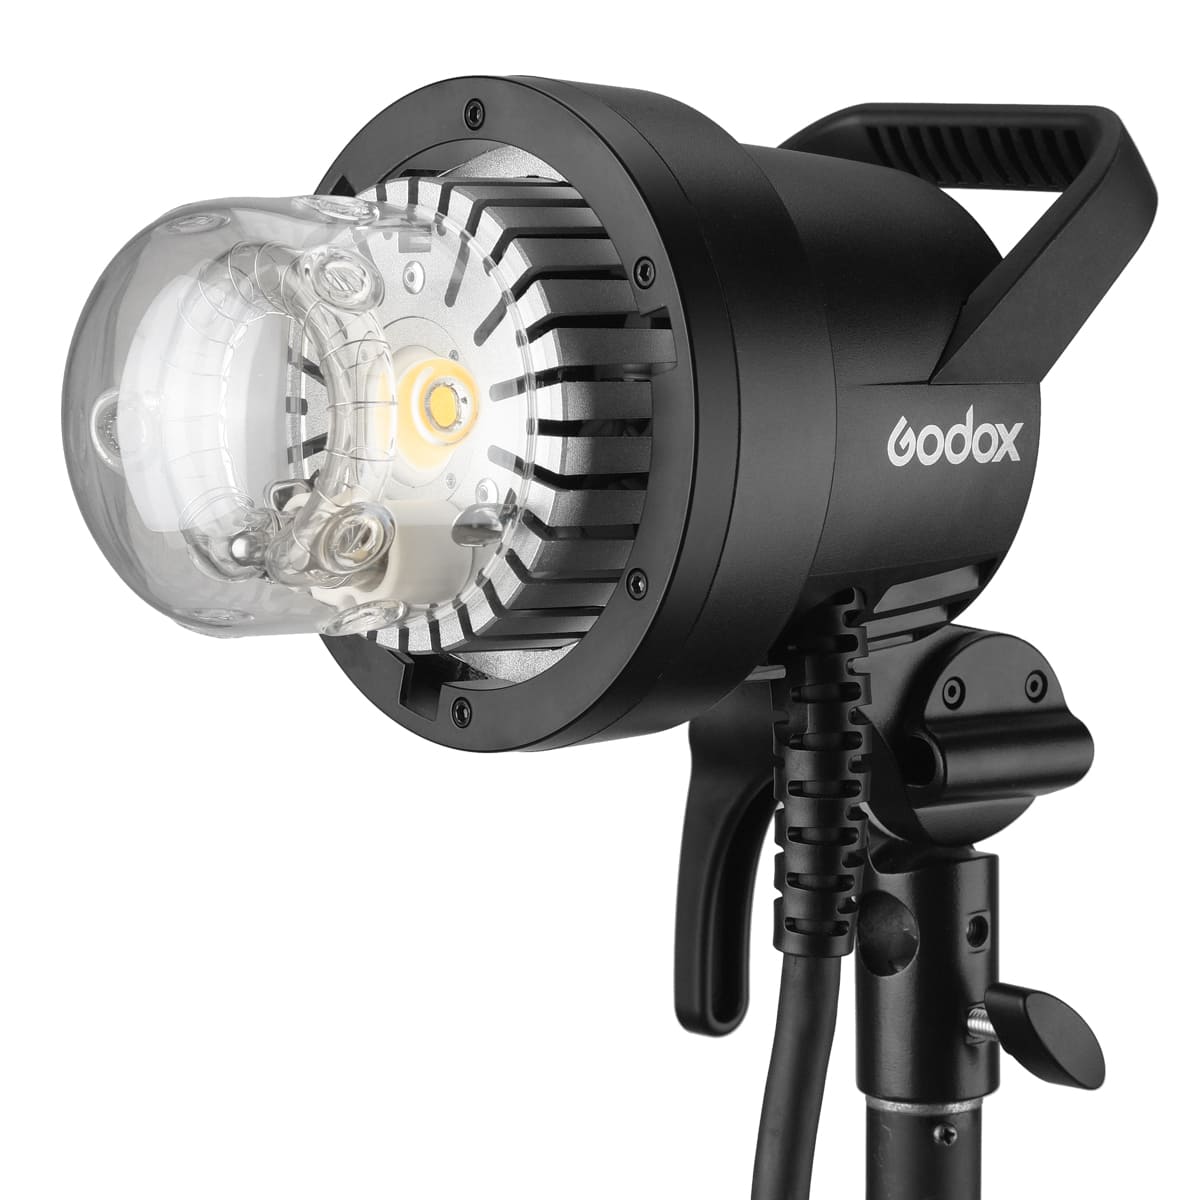 Đèn flash Godox AD1200 Pro - Hàng chính hãng